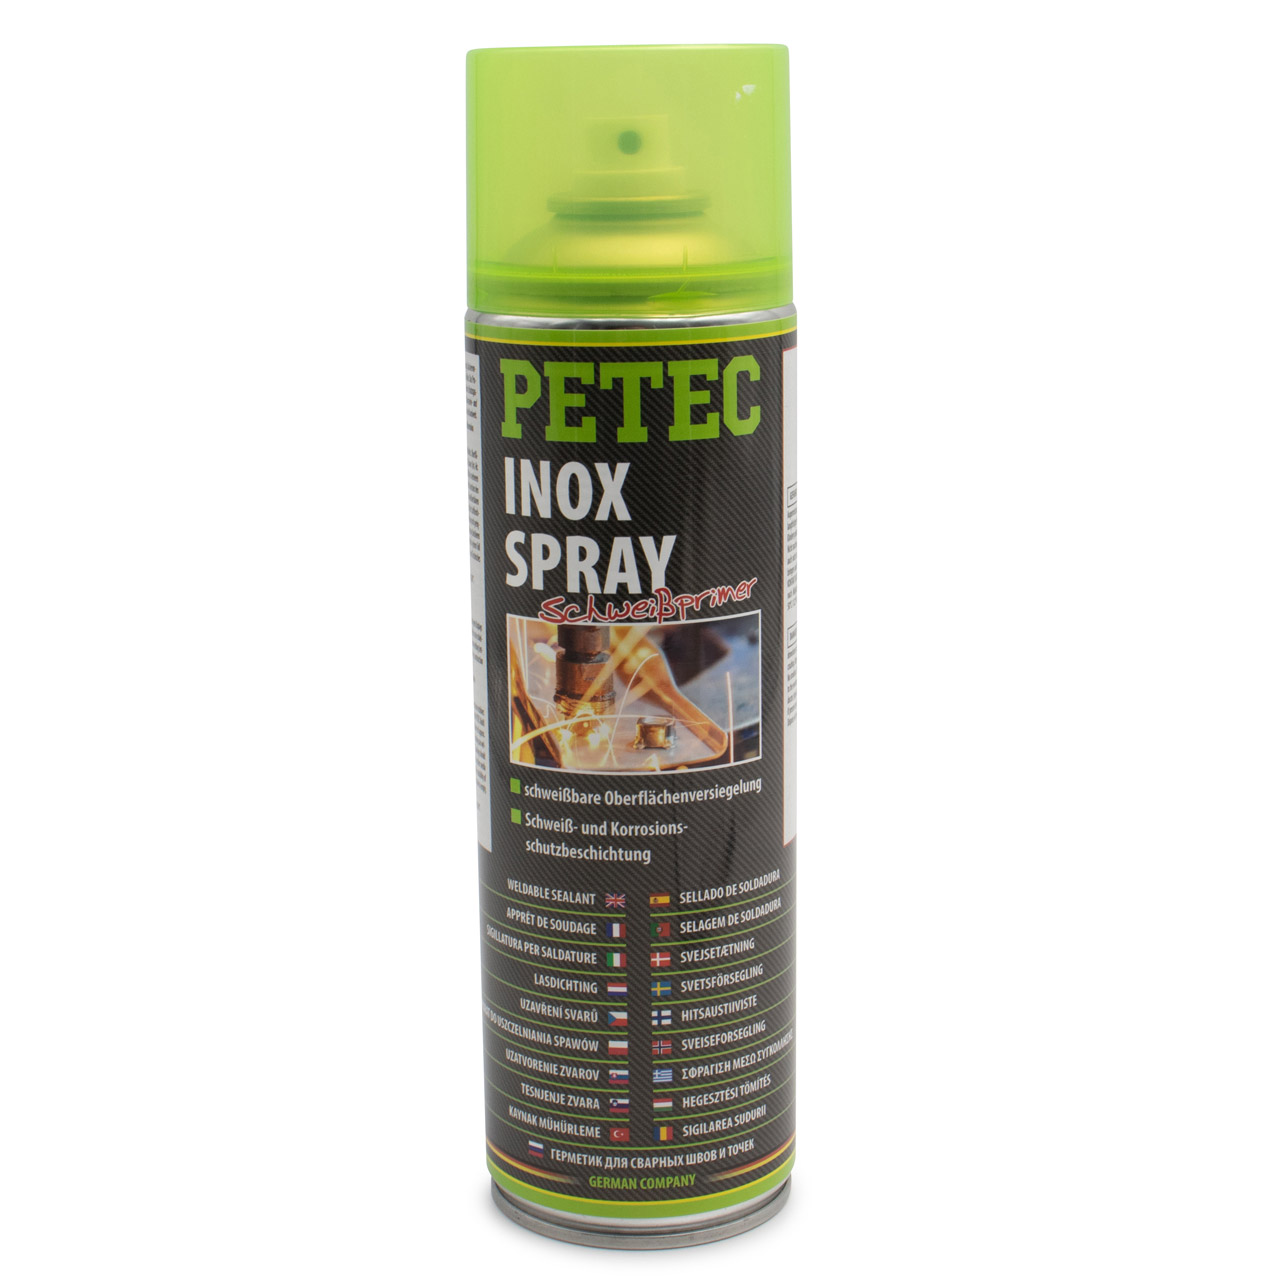 PETEC 70360 Inox Spray Schweißprimer Korrosionsschutzmittel Versiegelung Schutz 500ml